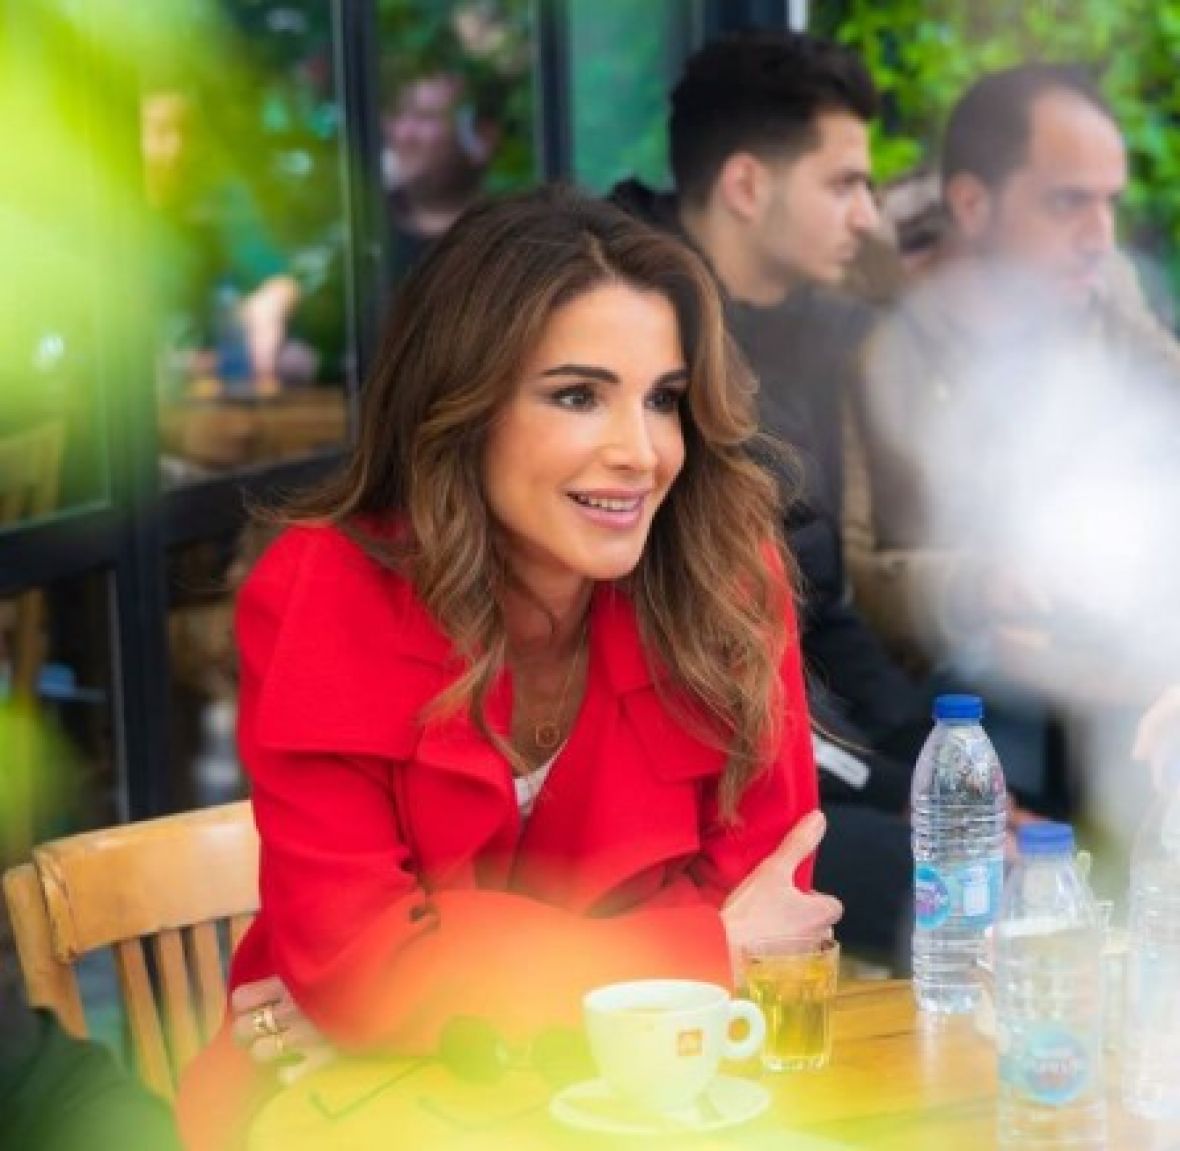 Foto: Instagram/Jordanska kraljica Rania